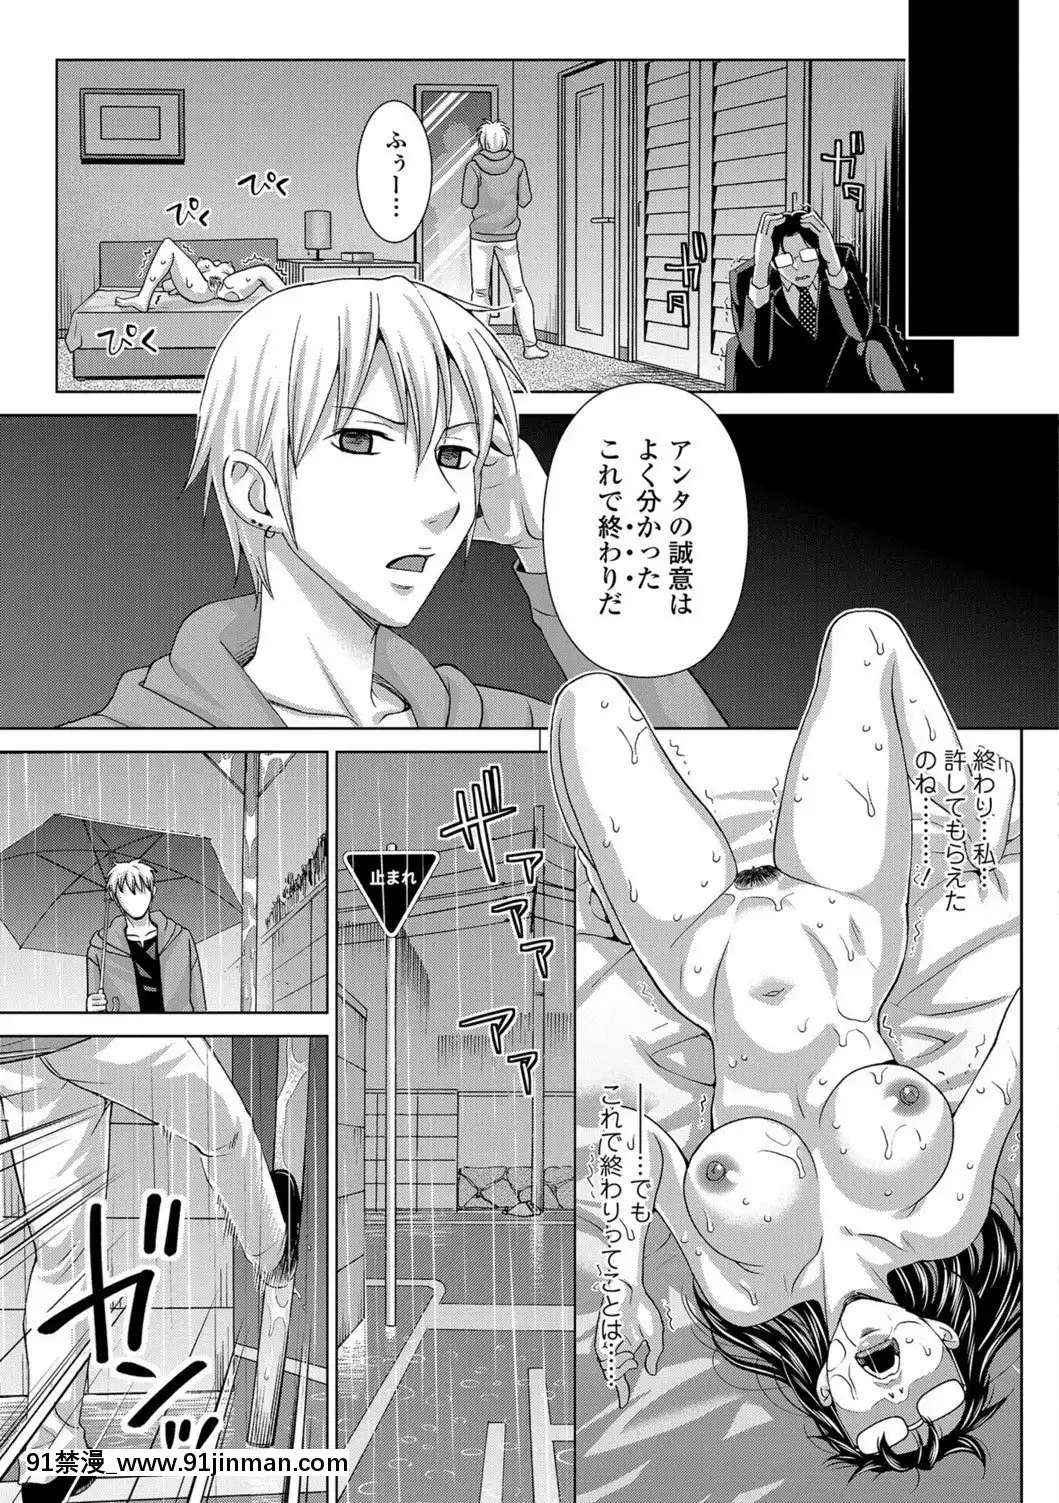 [Đồng hồ Asakura] Tôi sẽ trả bằng cơ thể của mình ~ Phần thưởng vật chất ~ [Kỹ thuật số]【truyện tranh lớp trưởng đại nhân chap79】